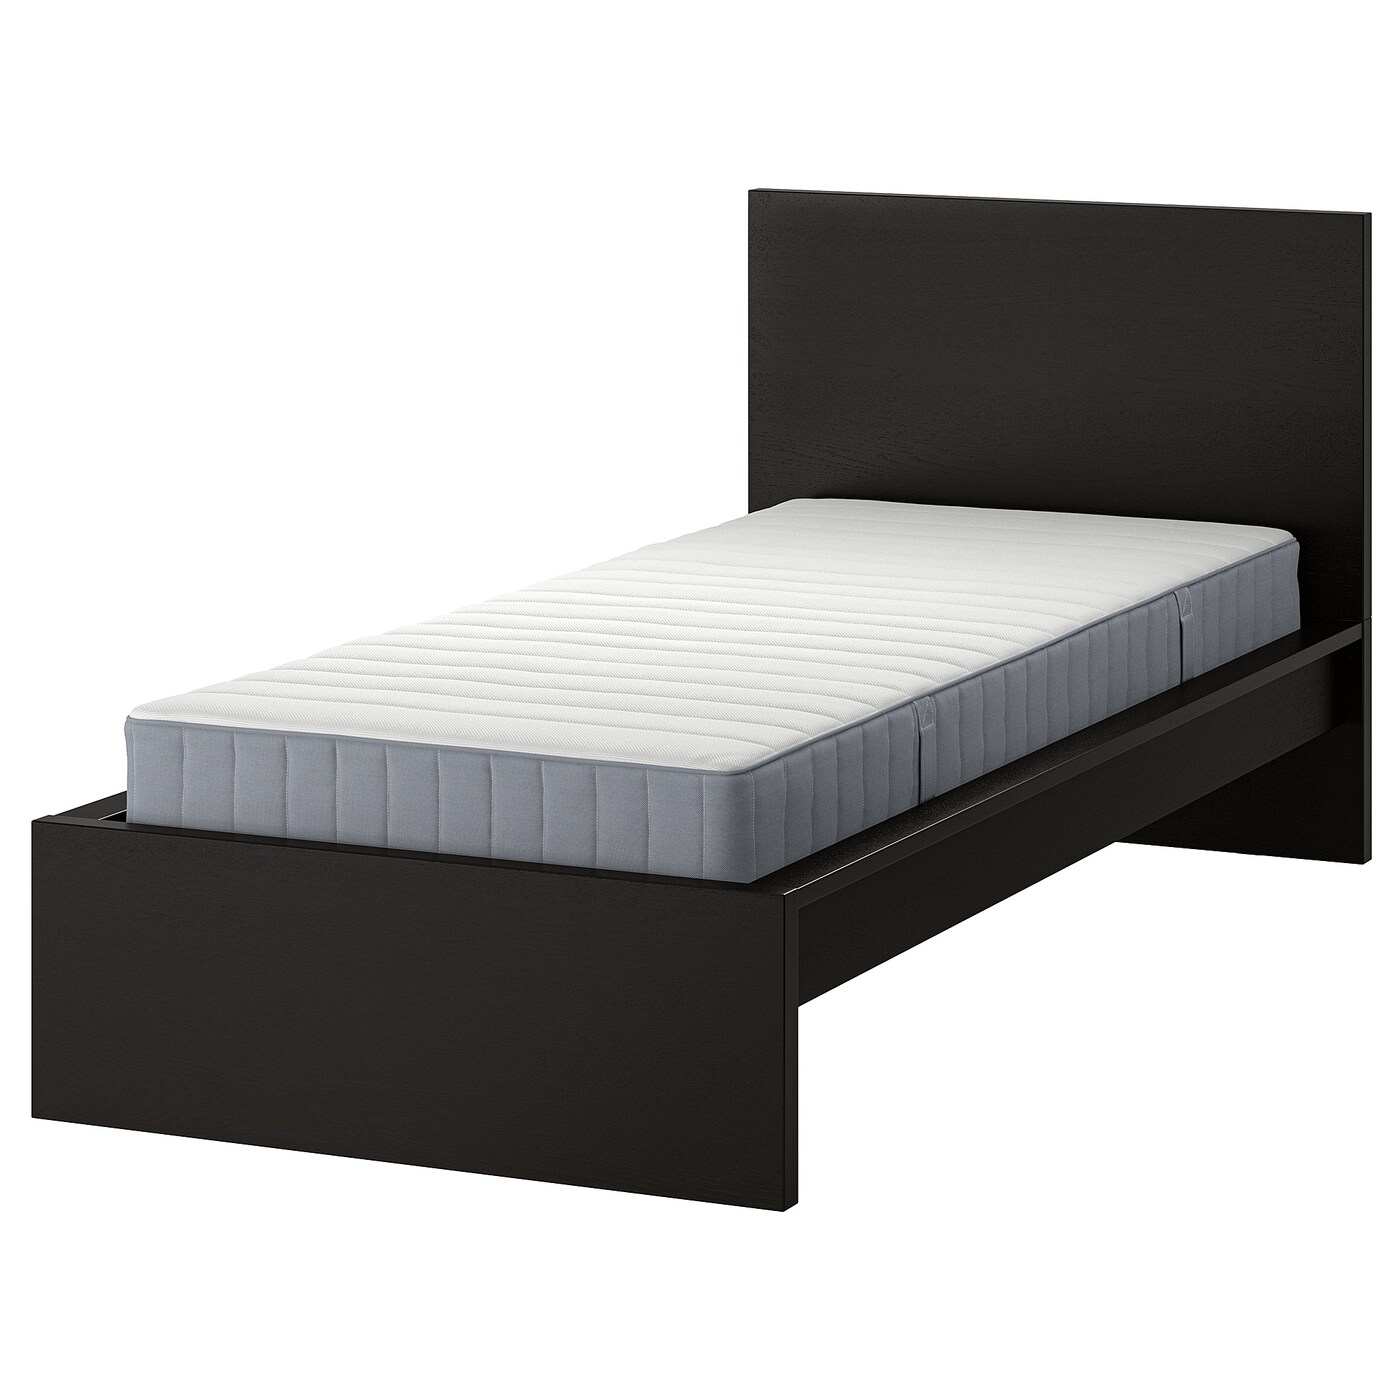 Кровать - IKEA MALM, 200х90 см, матрас средне-жесткий, черный, МАЛЬМ ИКЕА